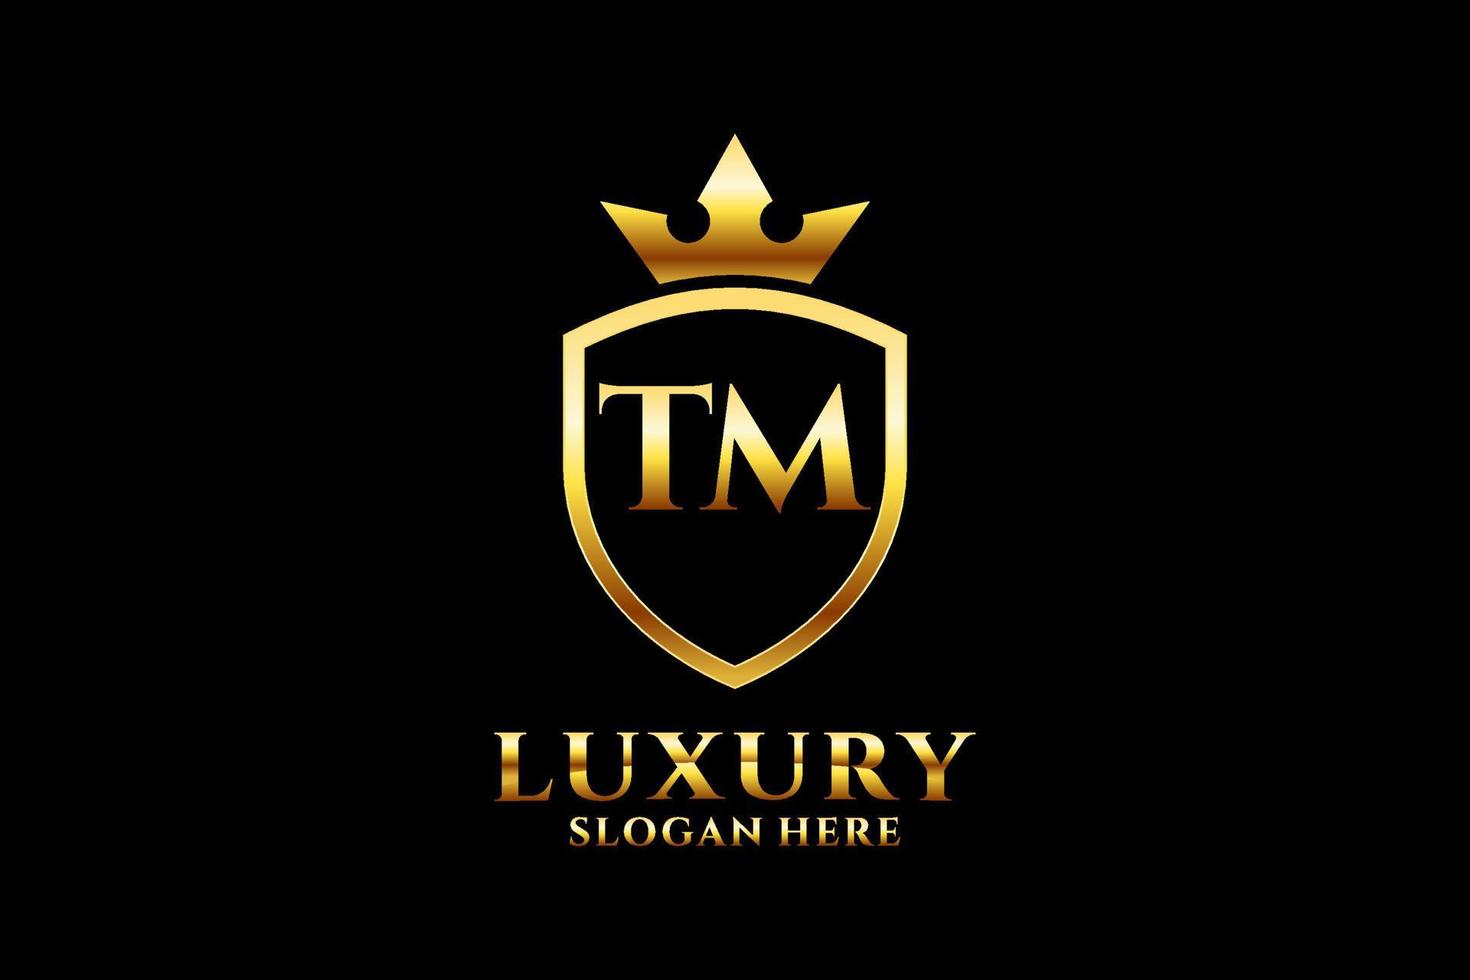 logo monogramme de luxe élégant initial tm ou modèle de badge avec volutes et couronne royale - parfait pour les projets de marque de luxe vecteur